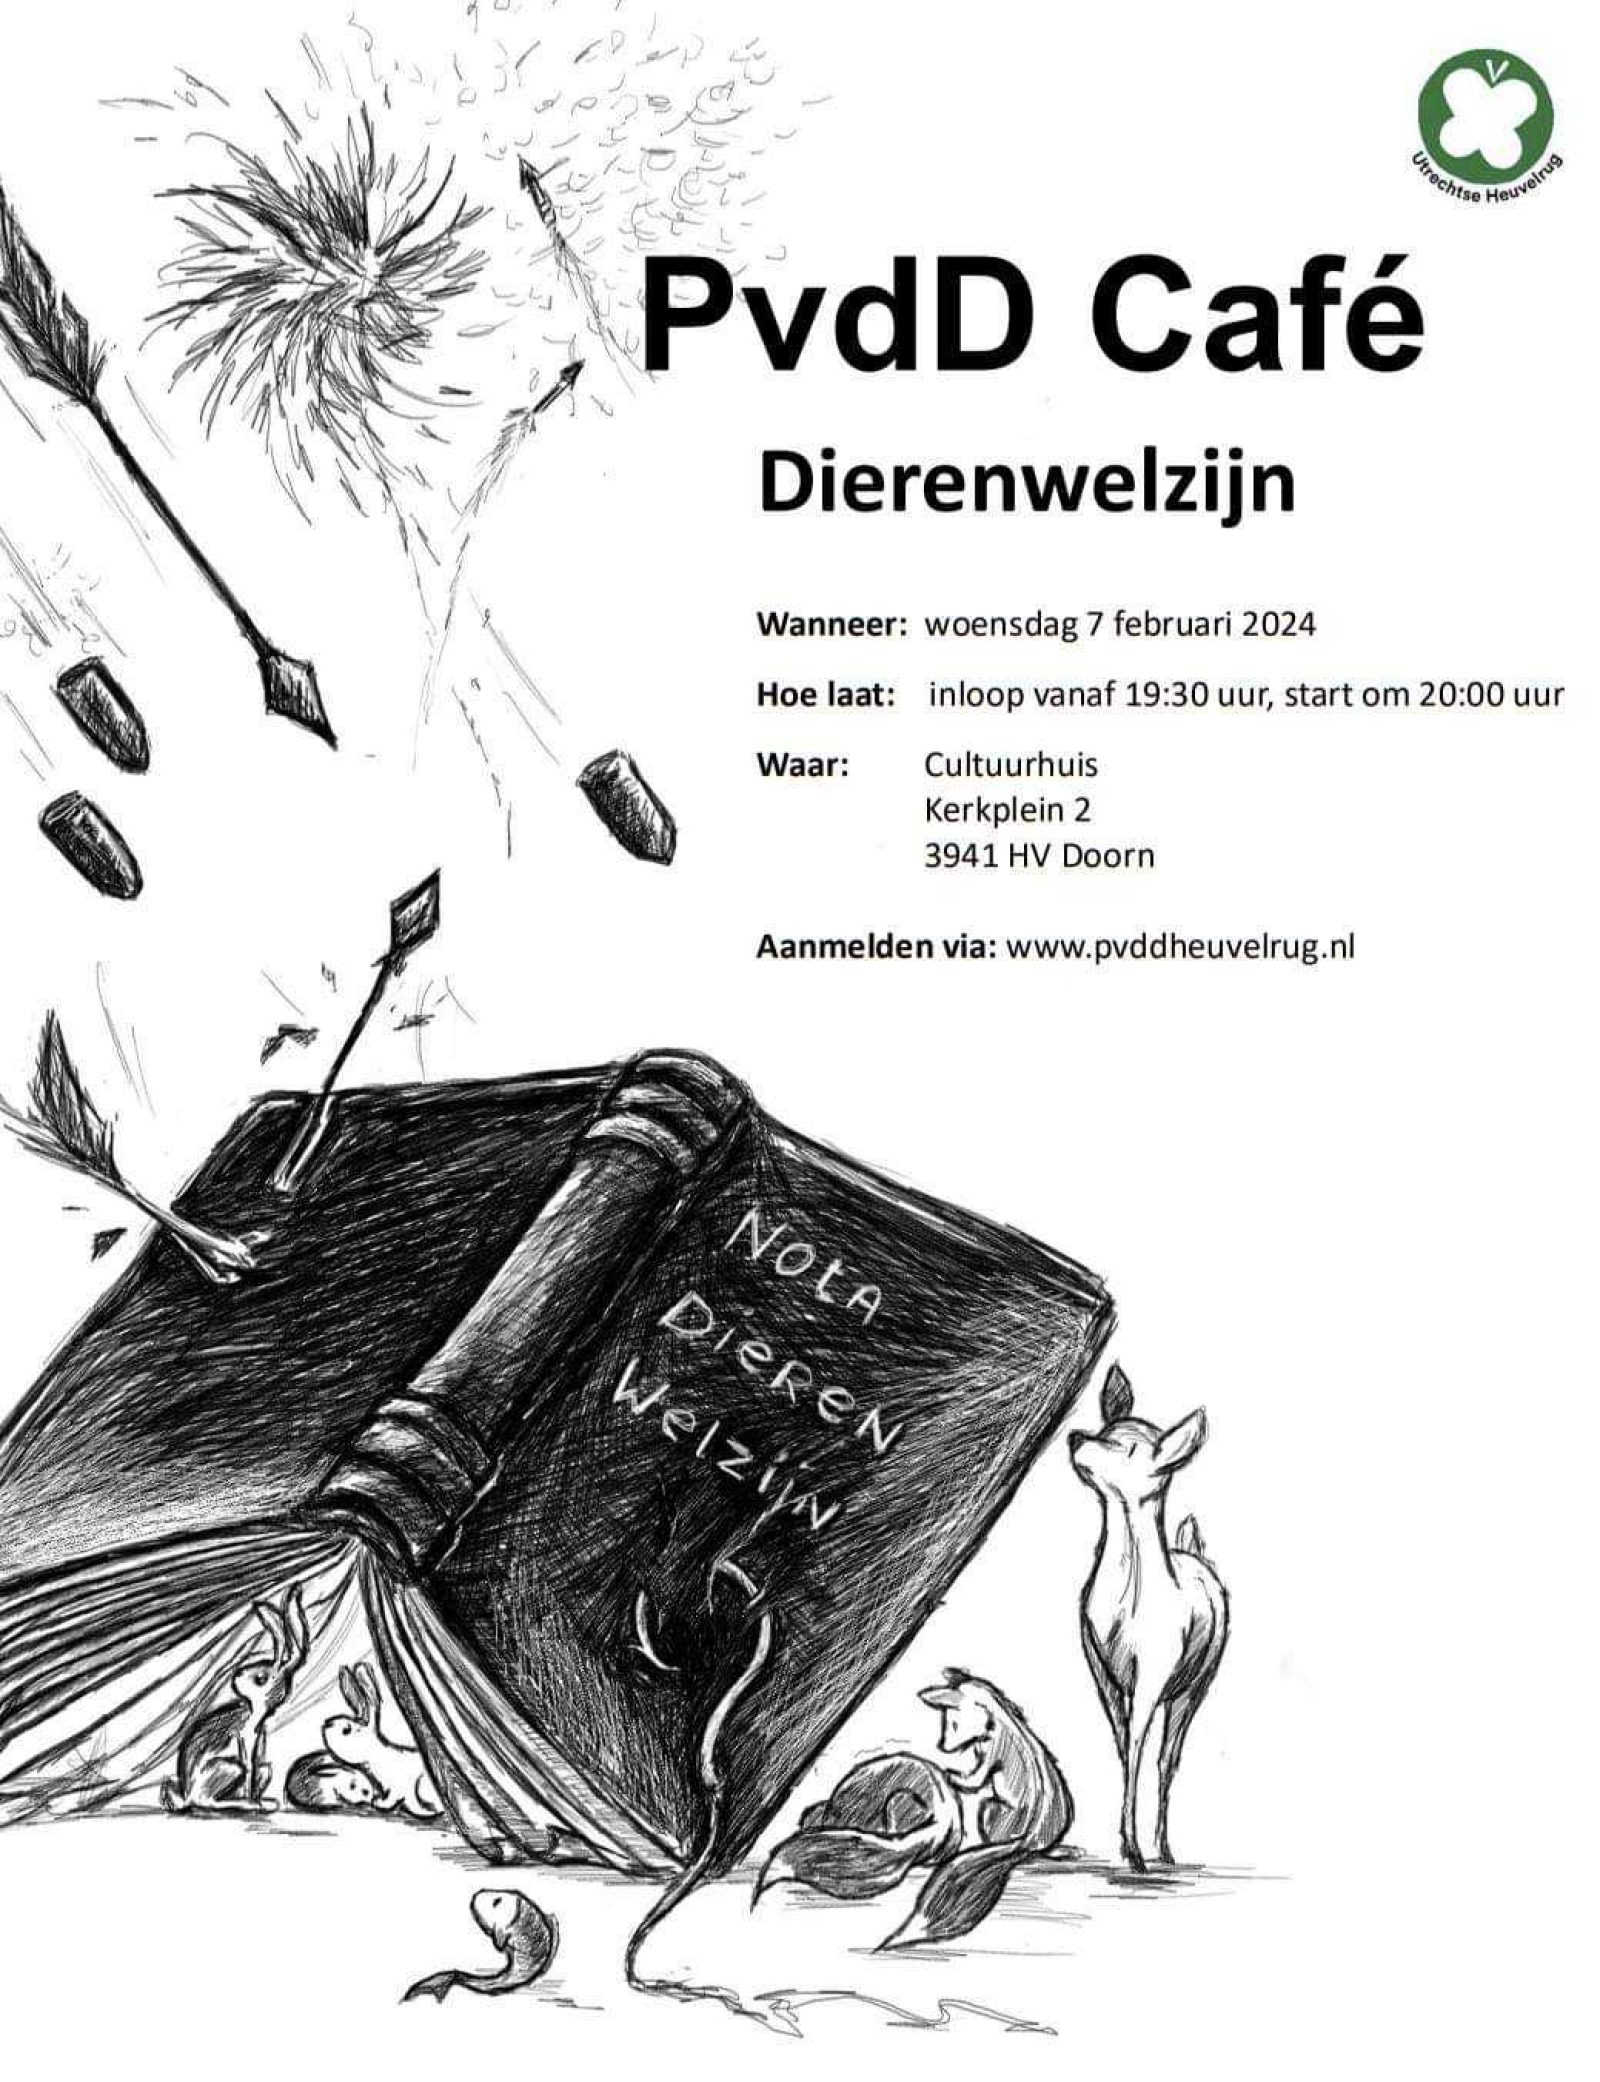 PvdD Cafe Dierenwelzijn